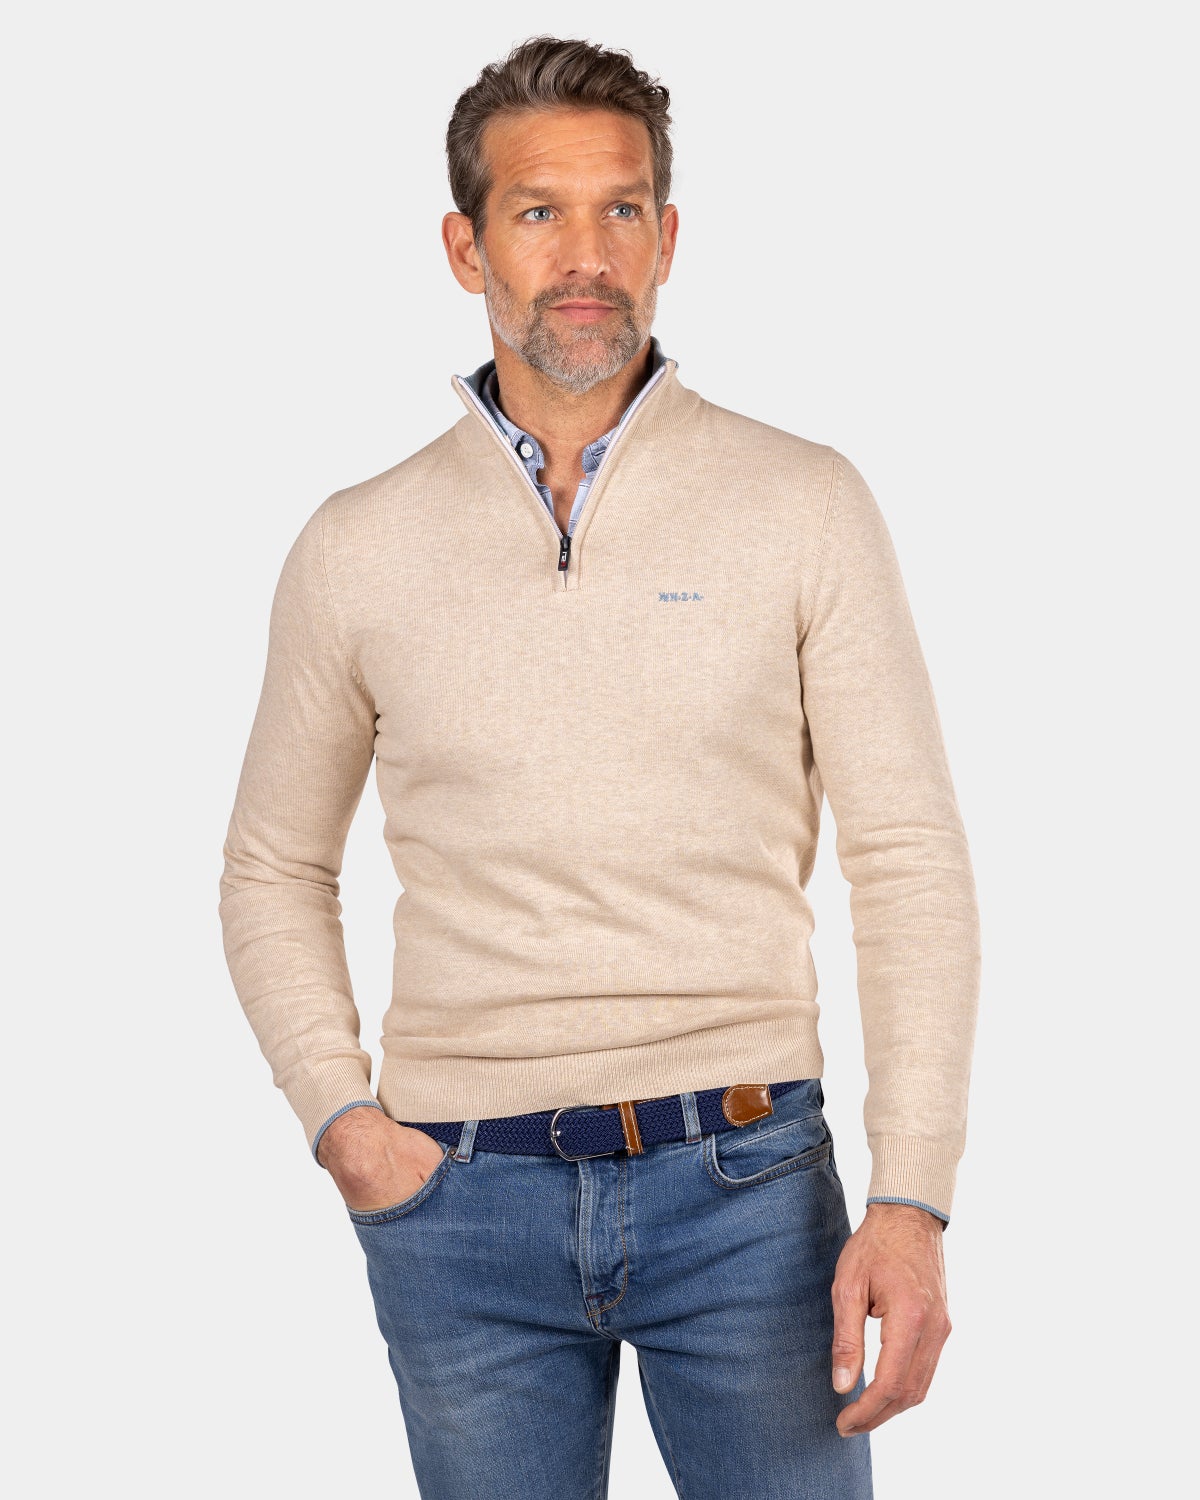 Beigefarbener Pullover mit halbem Reißverschluss - Oat Sand